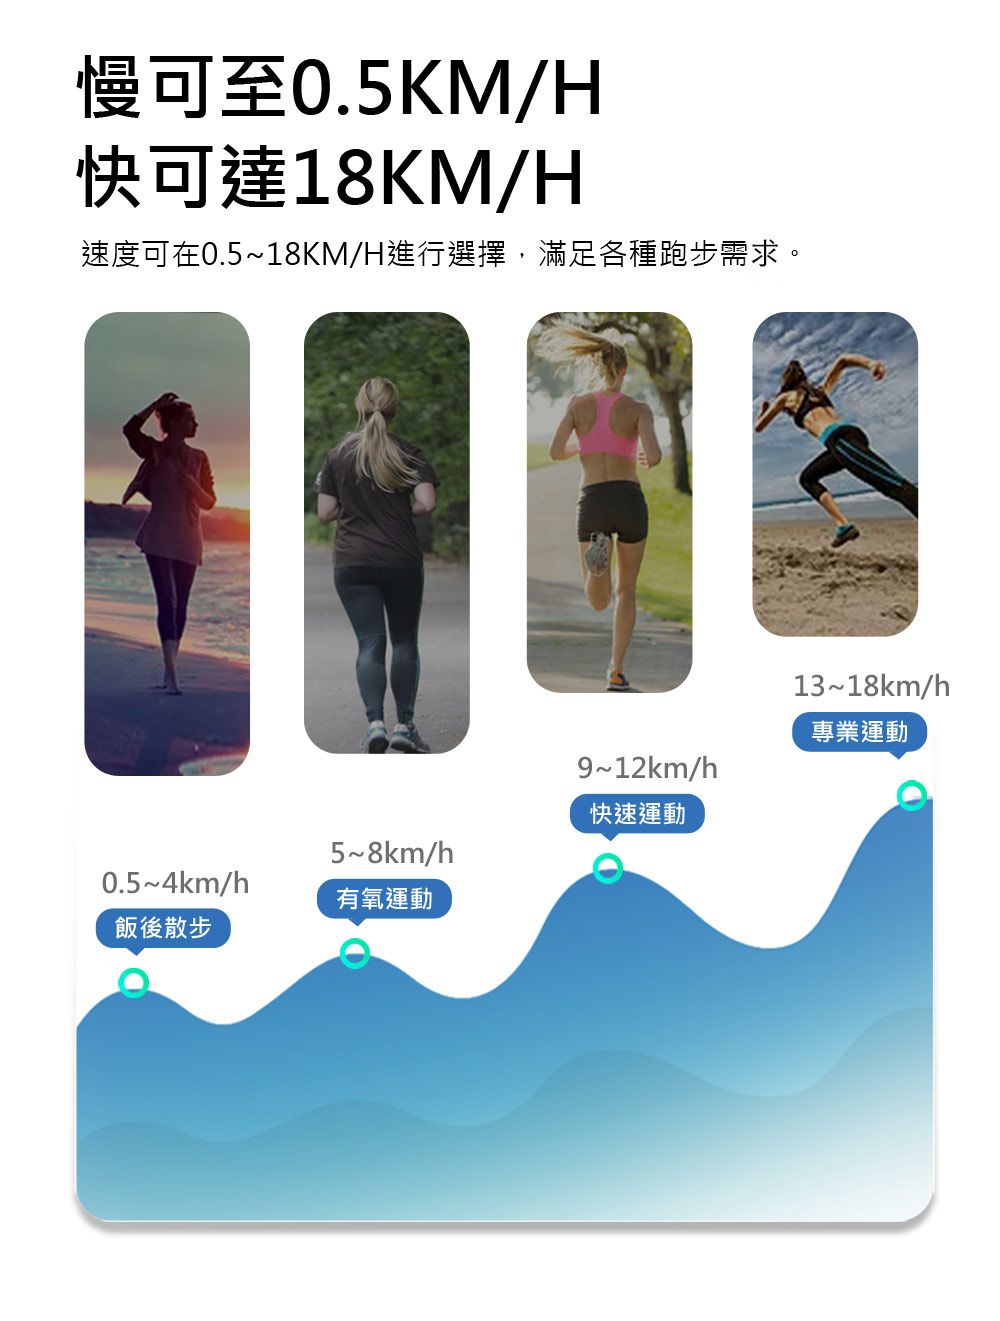 慢可至0.5KM/H快可達18KM/H速度可在0.5~18KM/H進行選擇,滿足各種跑步需求。5~8km/h0.5~4km/h有氧運動飯後散步13~18km/h專業運動9~12km/h快速運動